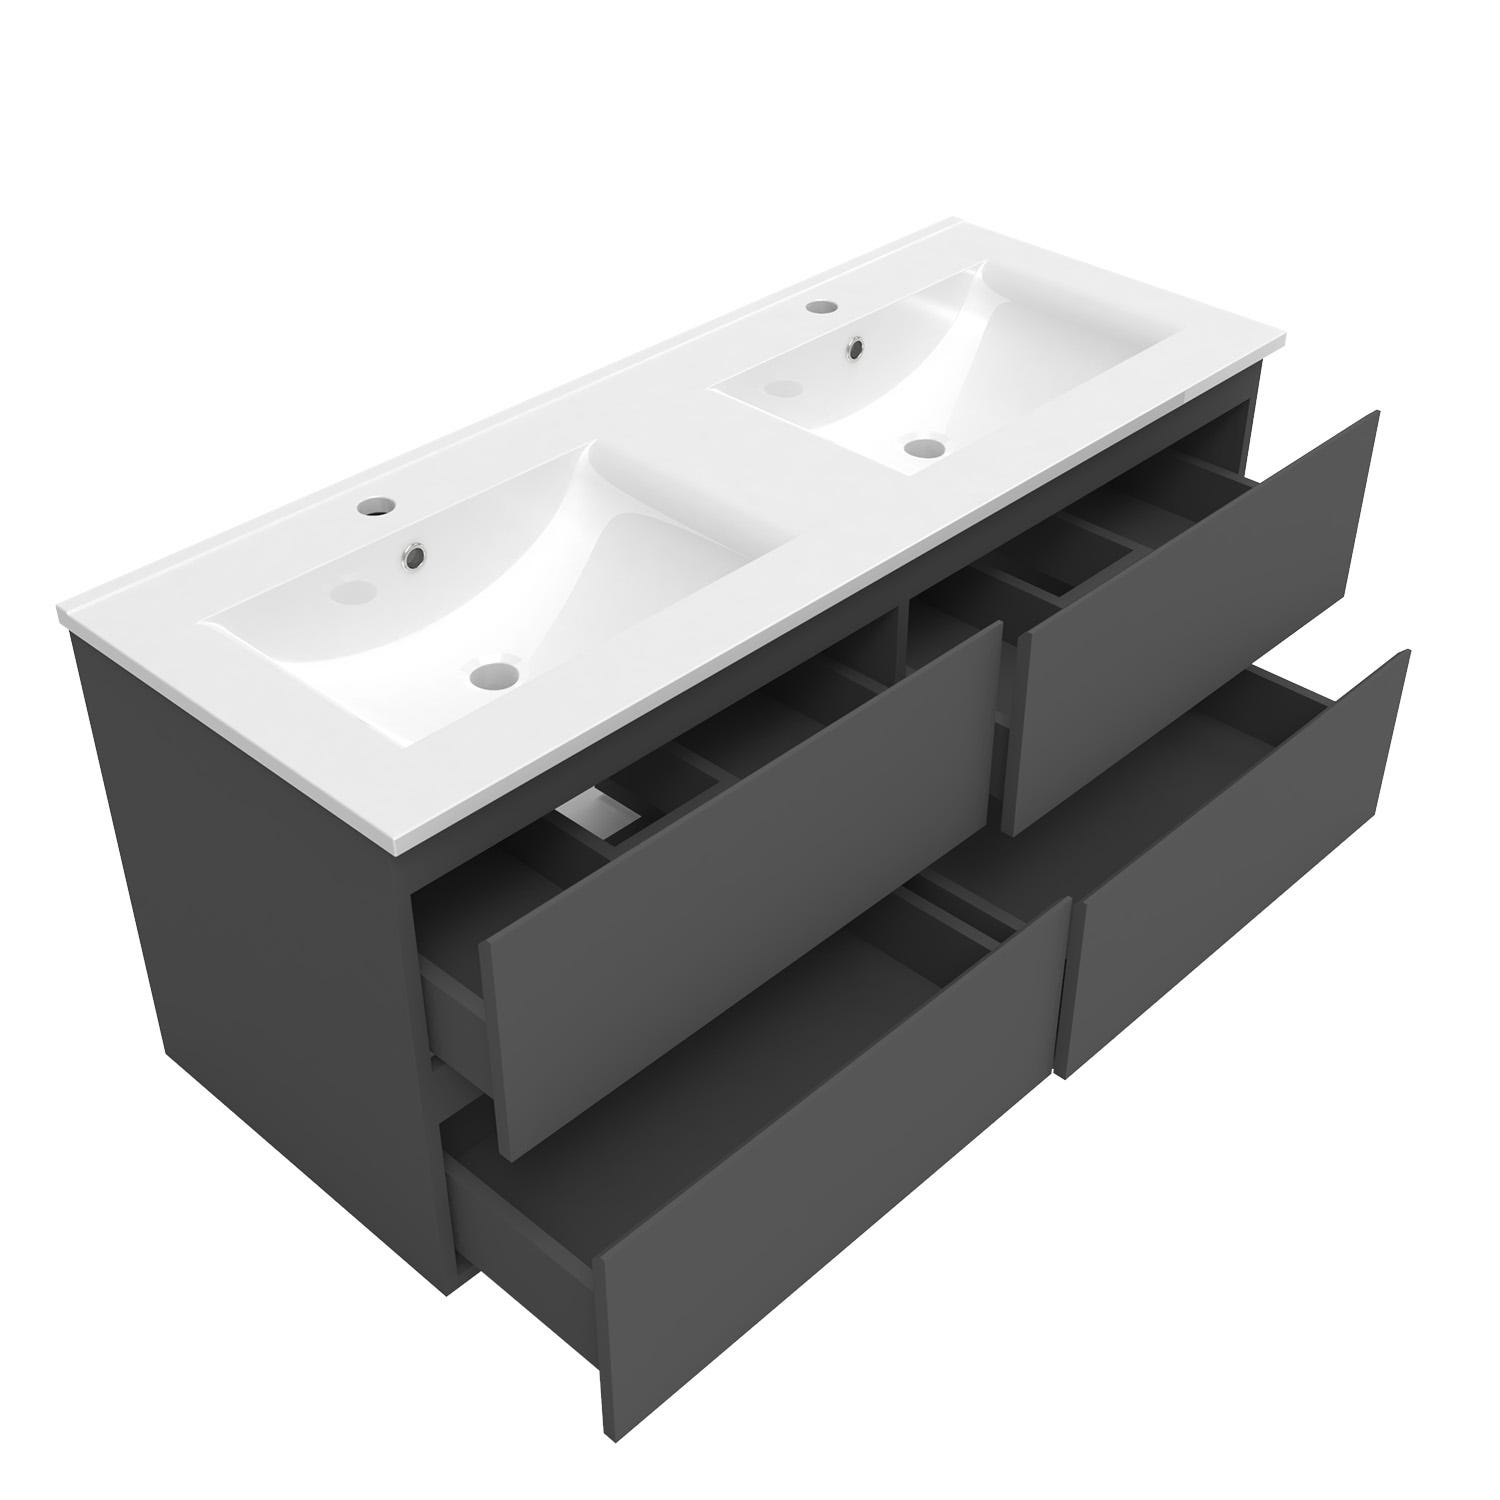 AICA Ensemble meuble double vasque L.120cm 4 tiroirs + lavabo + 2*LED miroirs rond 60cm + colonne B,anthracite 1